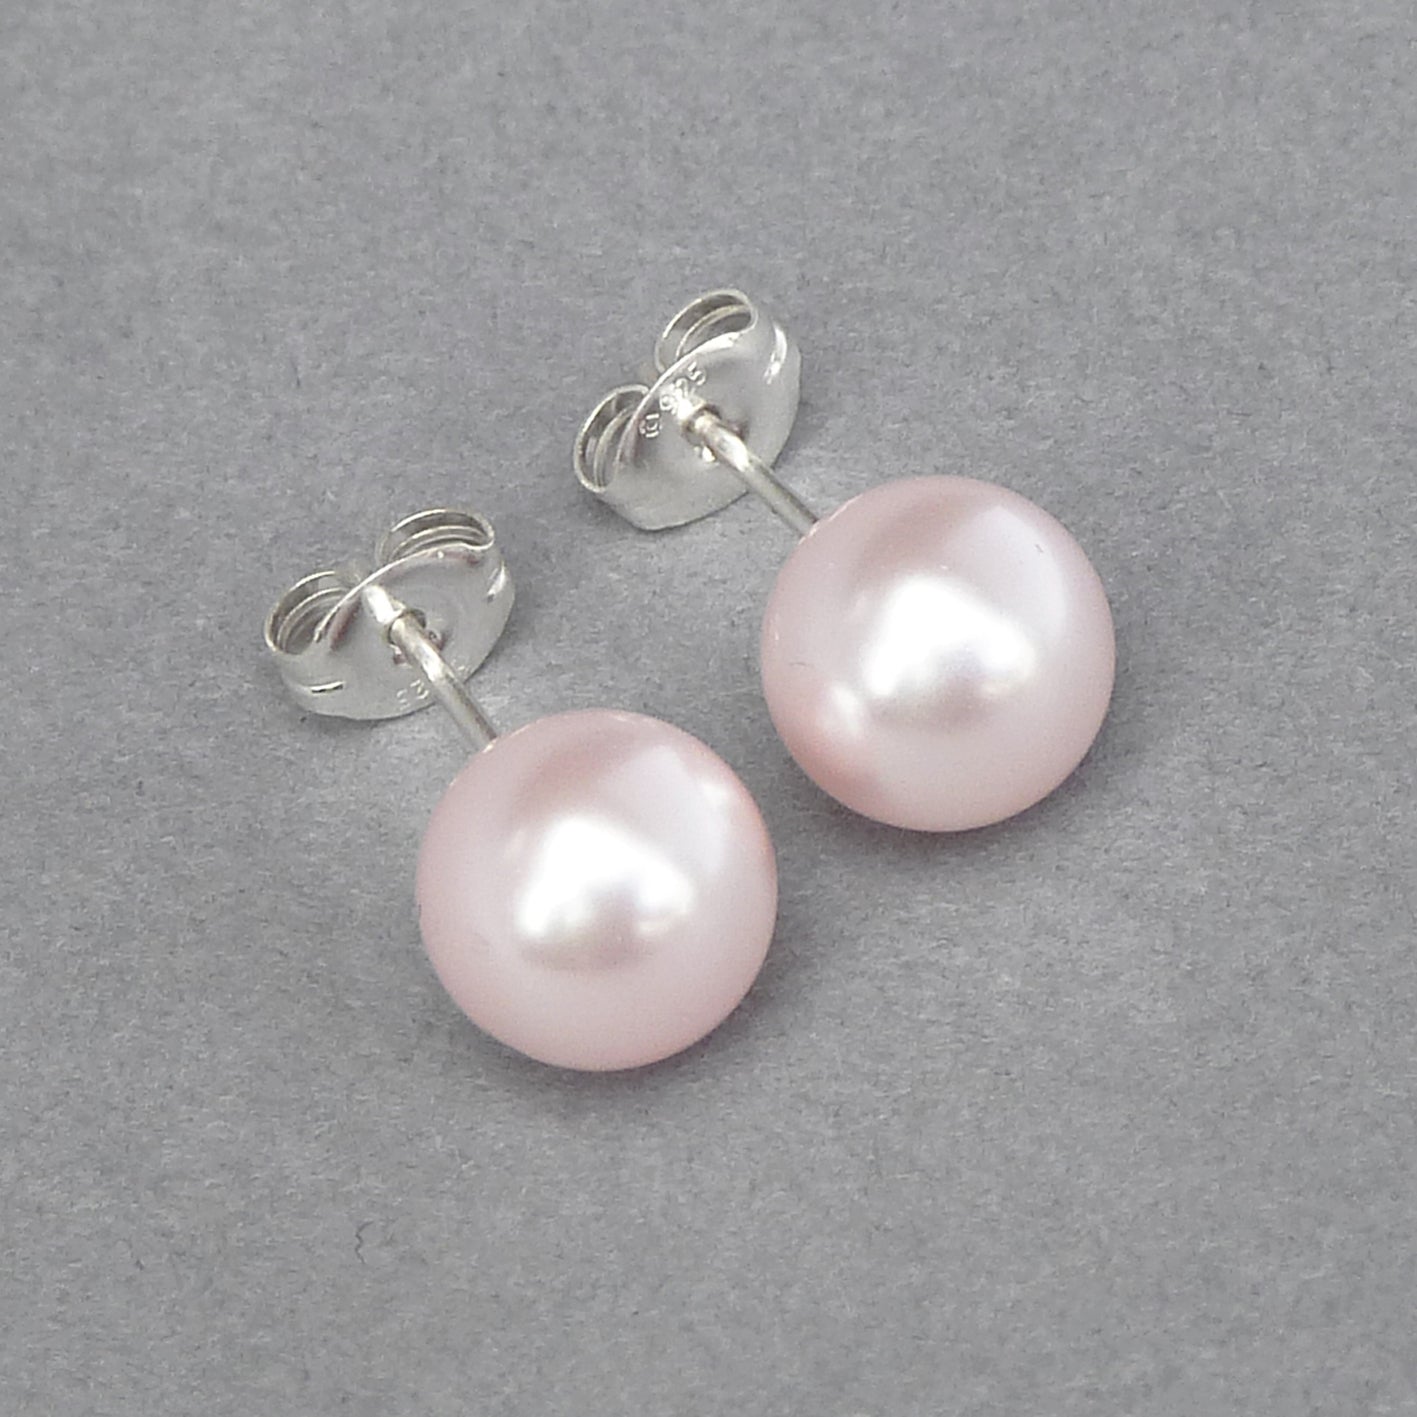 8mm pale pink pearl stud earrings